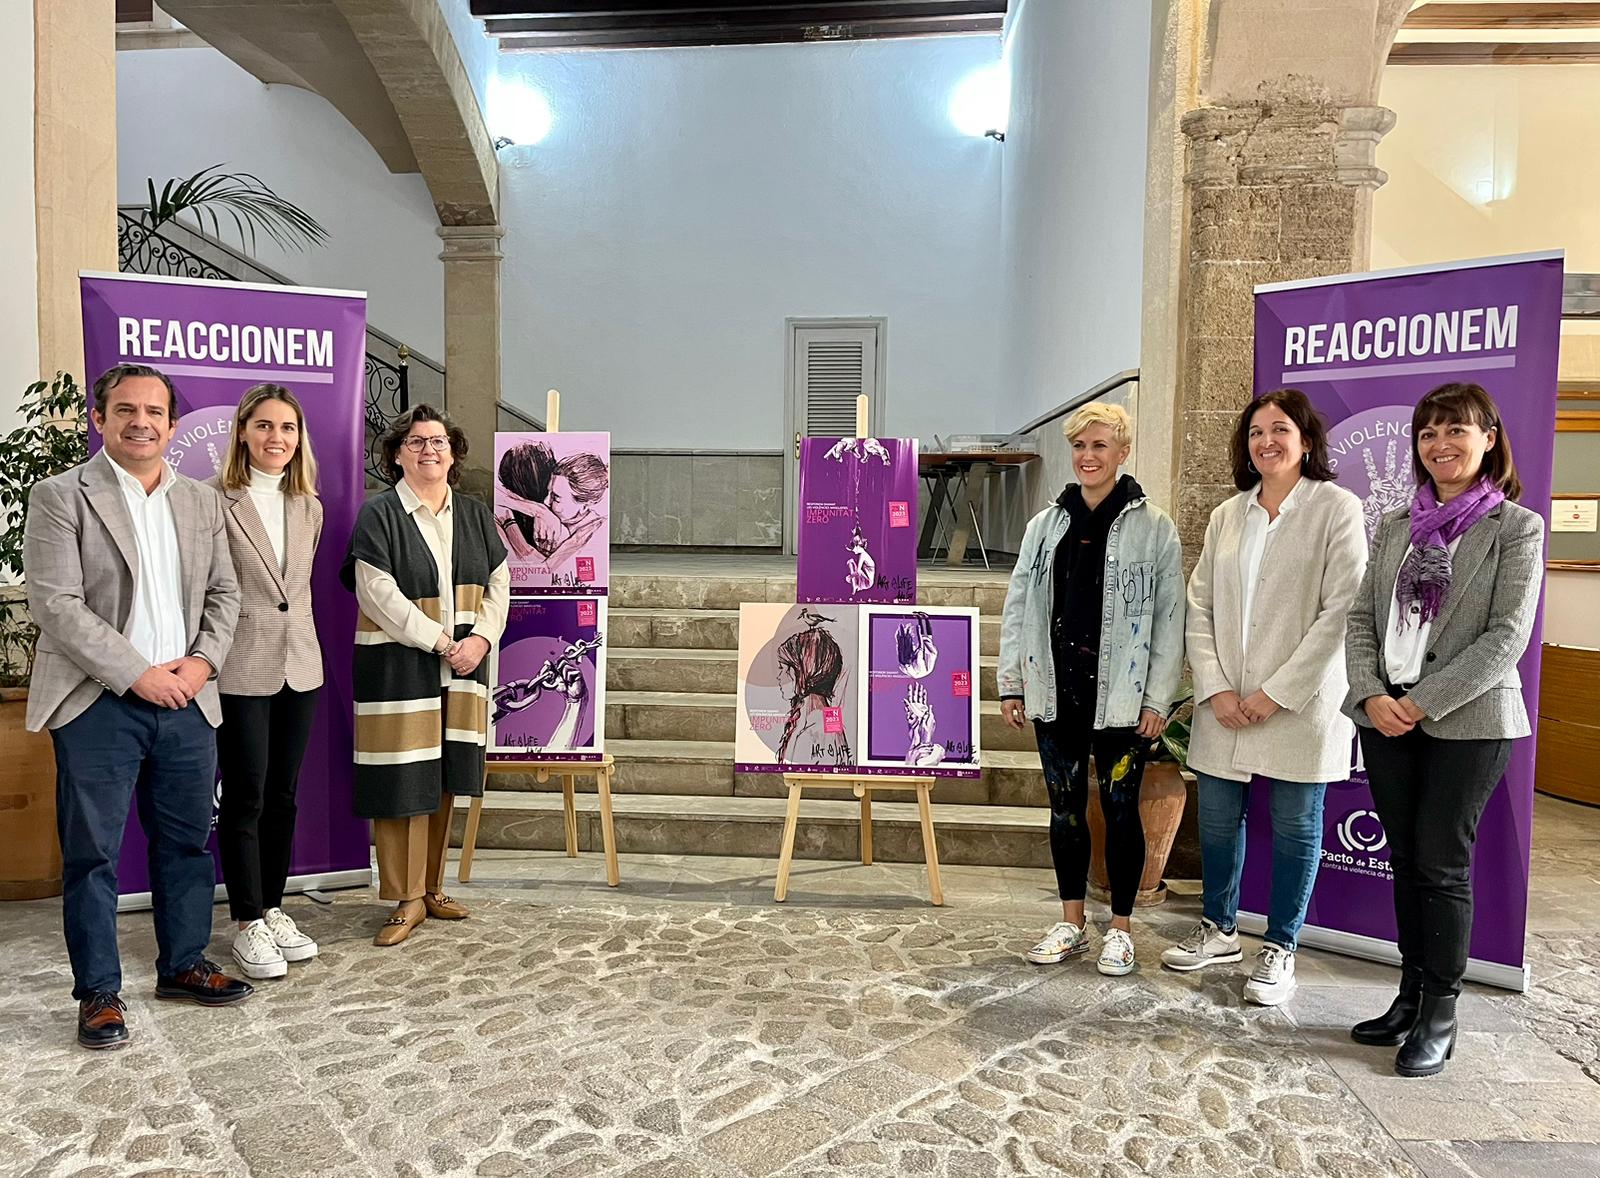 Representantes de las instituciones de las Islas Baleares han presentado los actos del Día Internacional para la Eliminación de la Violencia contra las Mujeres que han organizado de forma conjunta